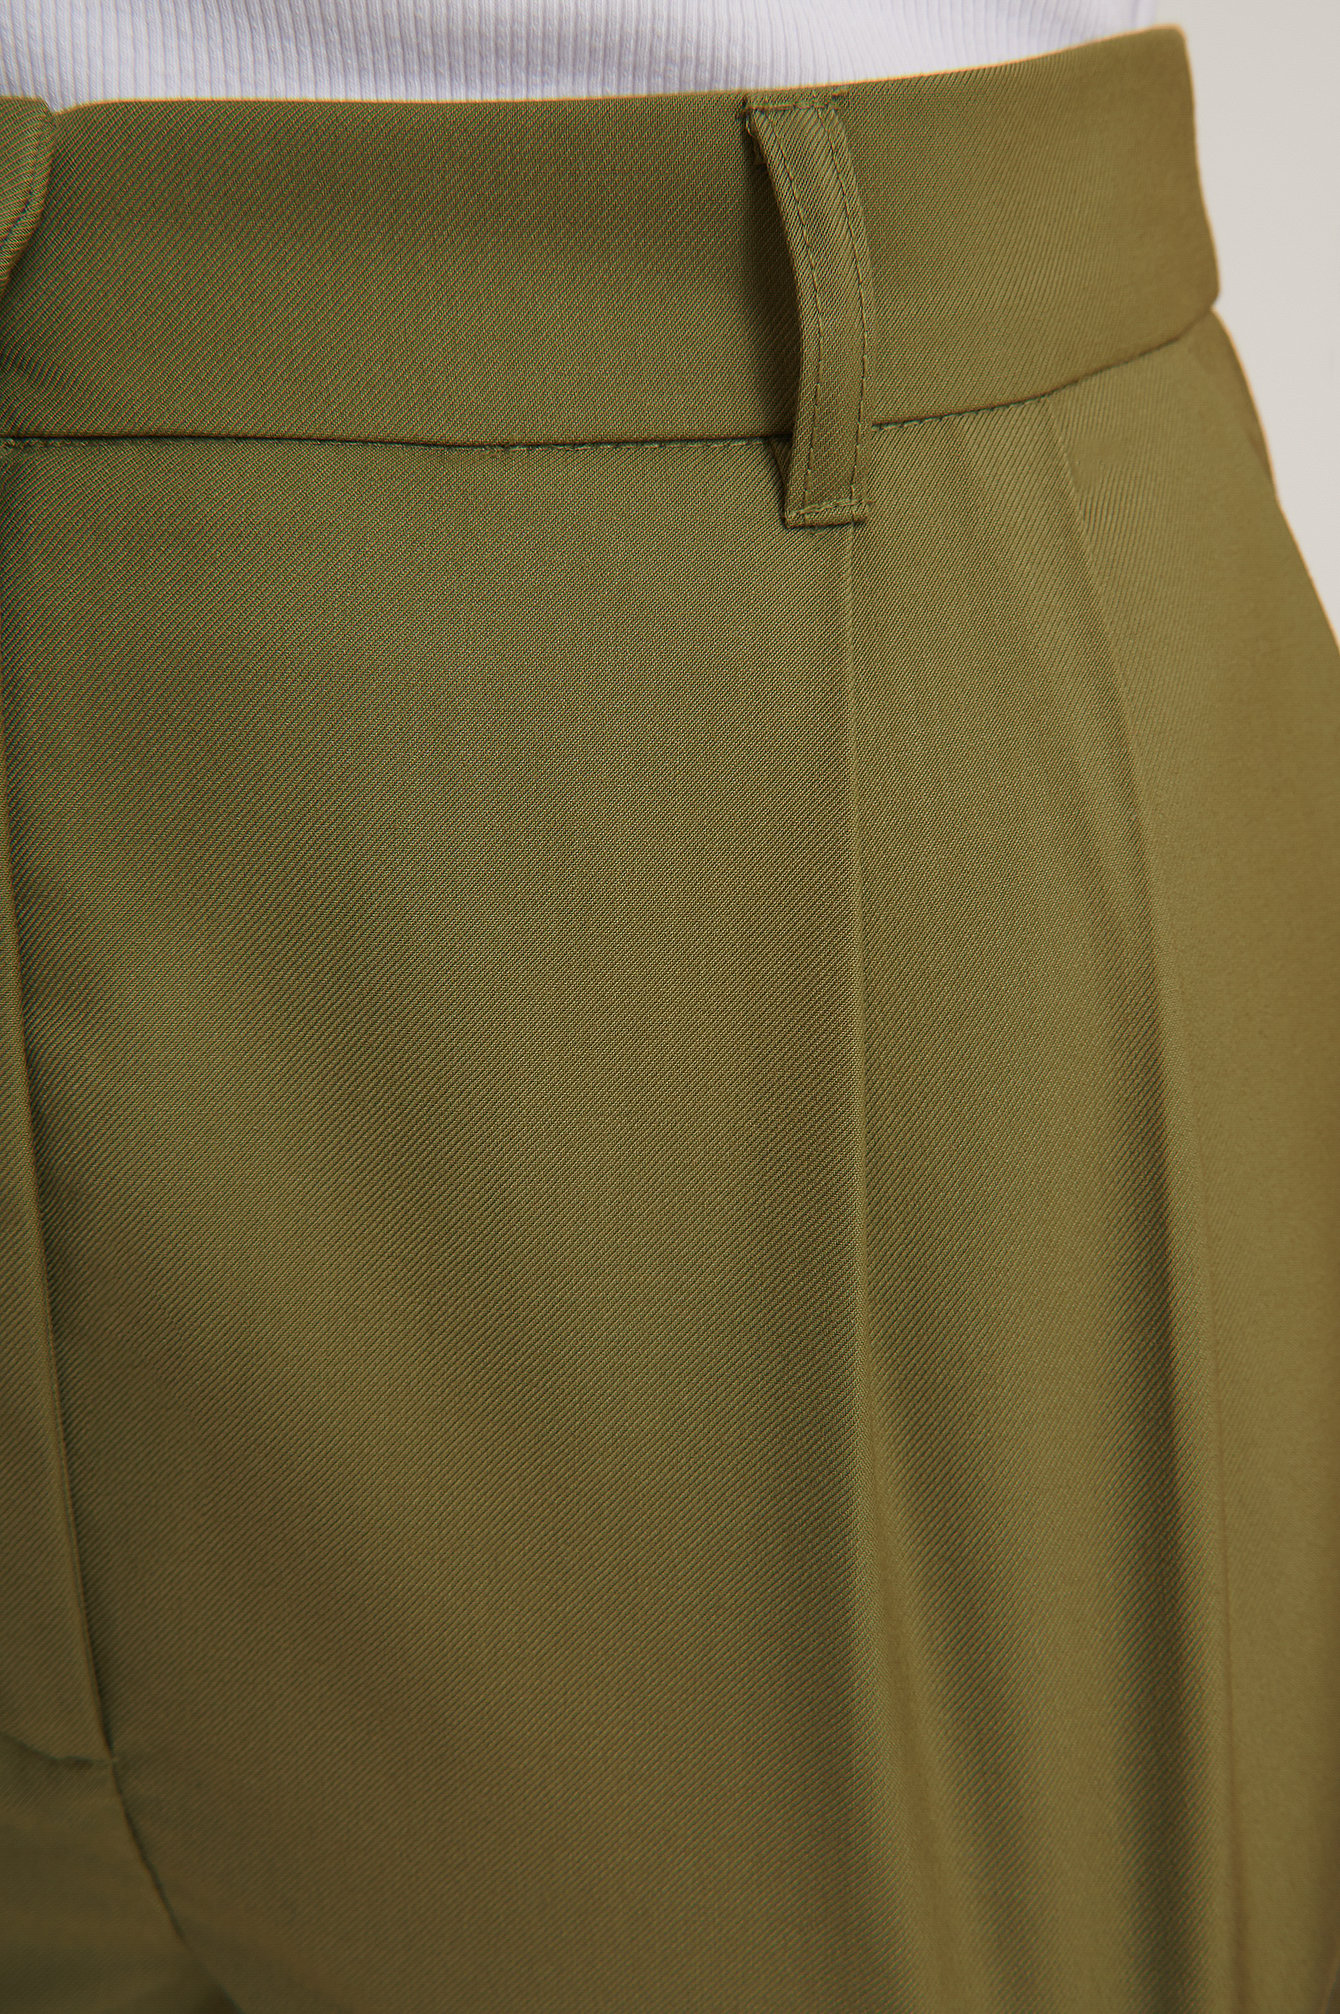 Olive Green Plisowane Spodnie Do Żakietu